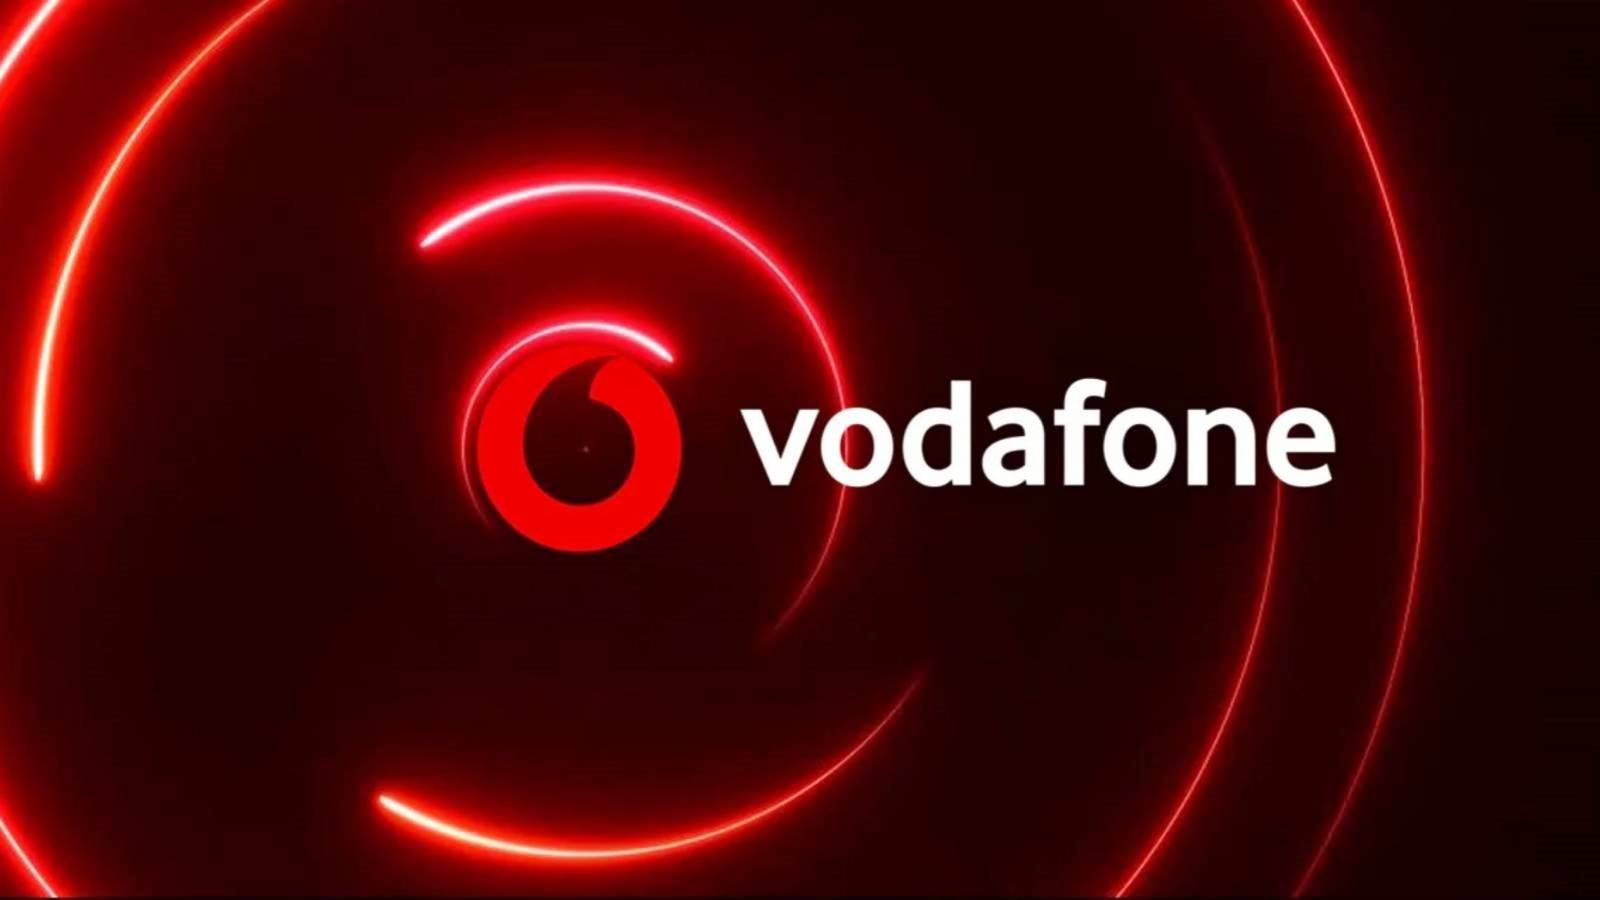 Vodafone Nytt certifikat tack vare kvaliteten på Rumäniens nätverk